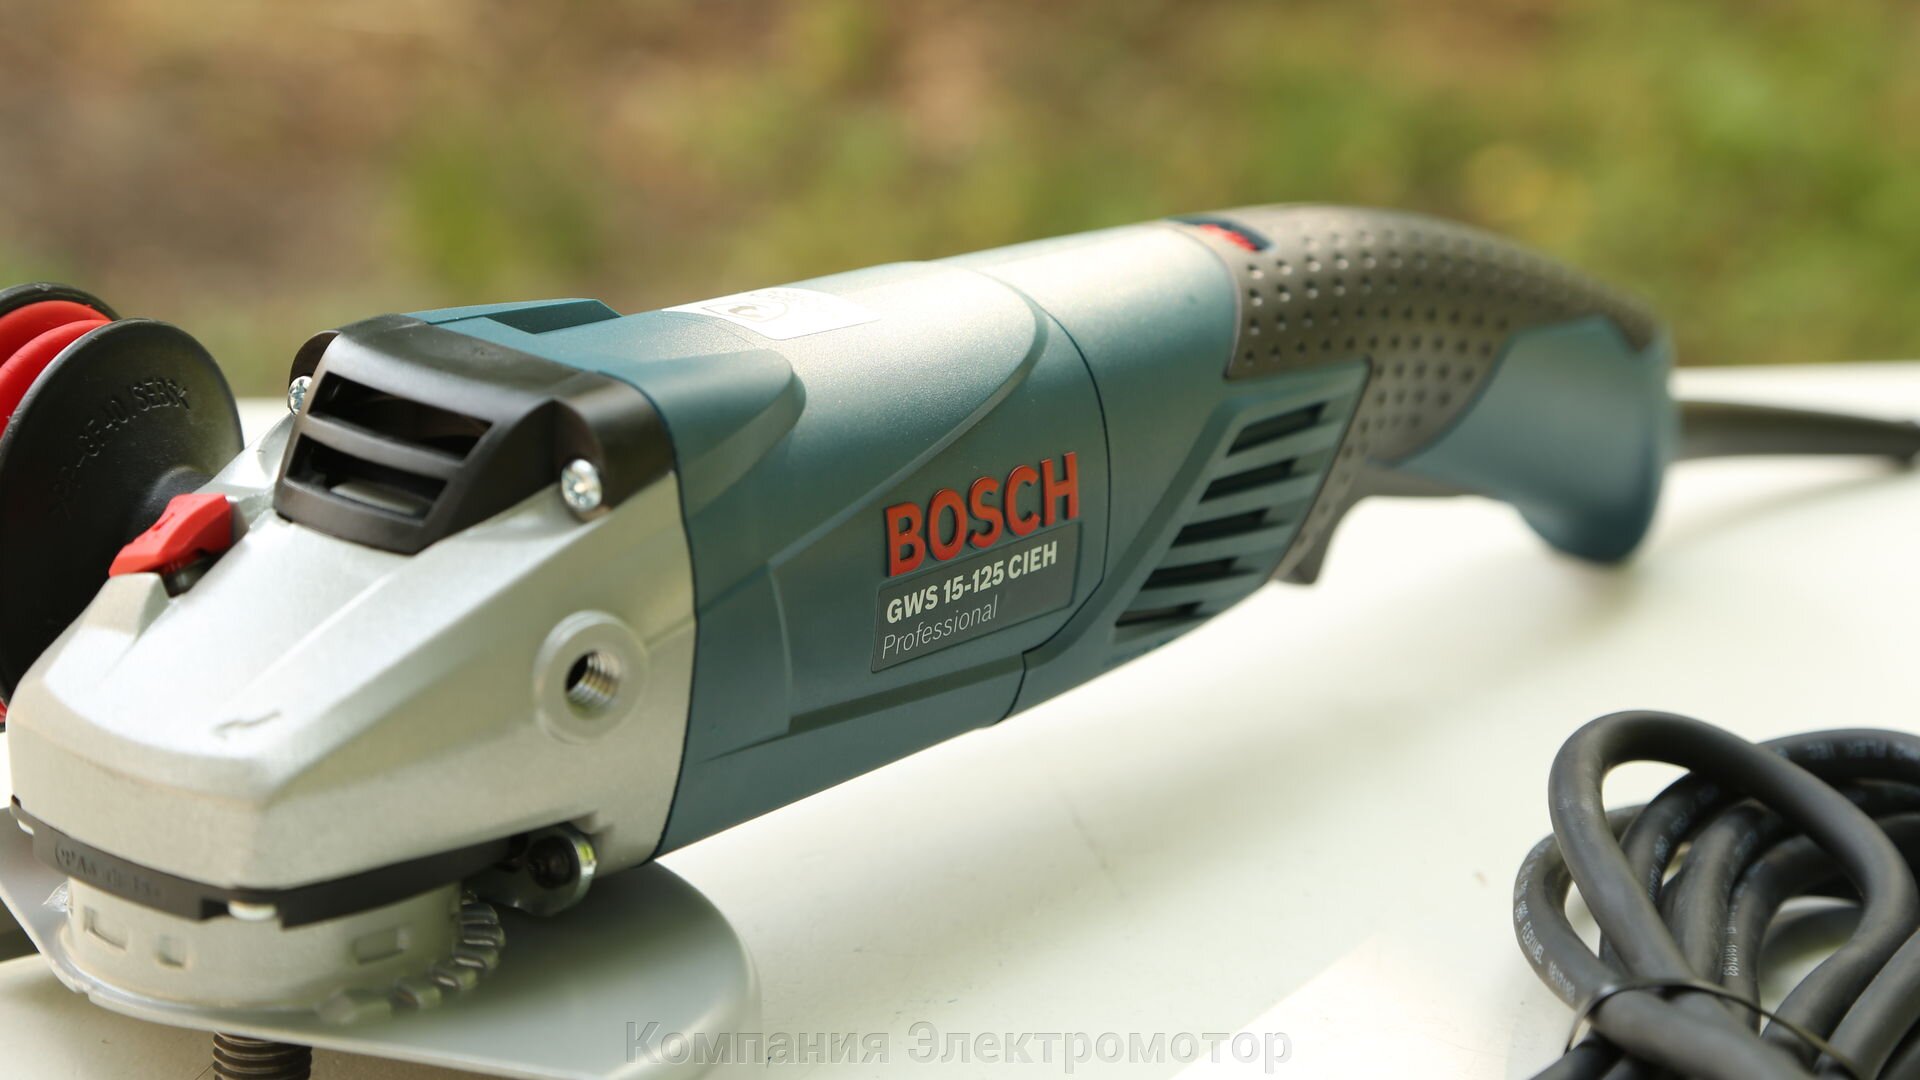 Угловая шлифмашина Bosch GWS 15-125 CIEH